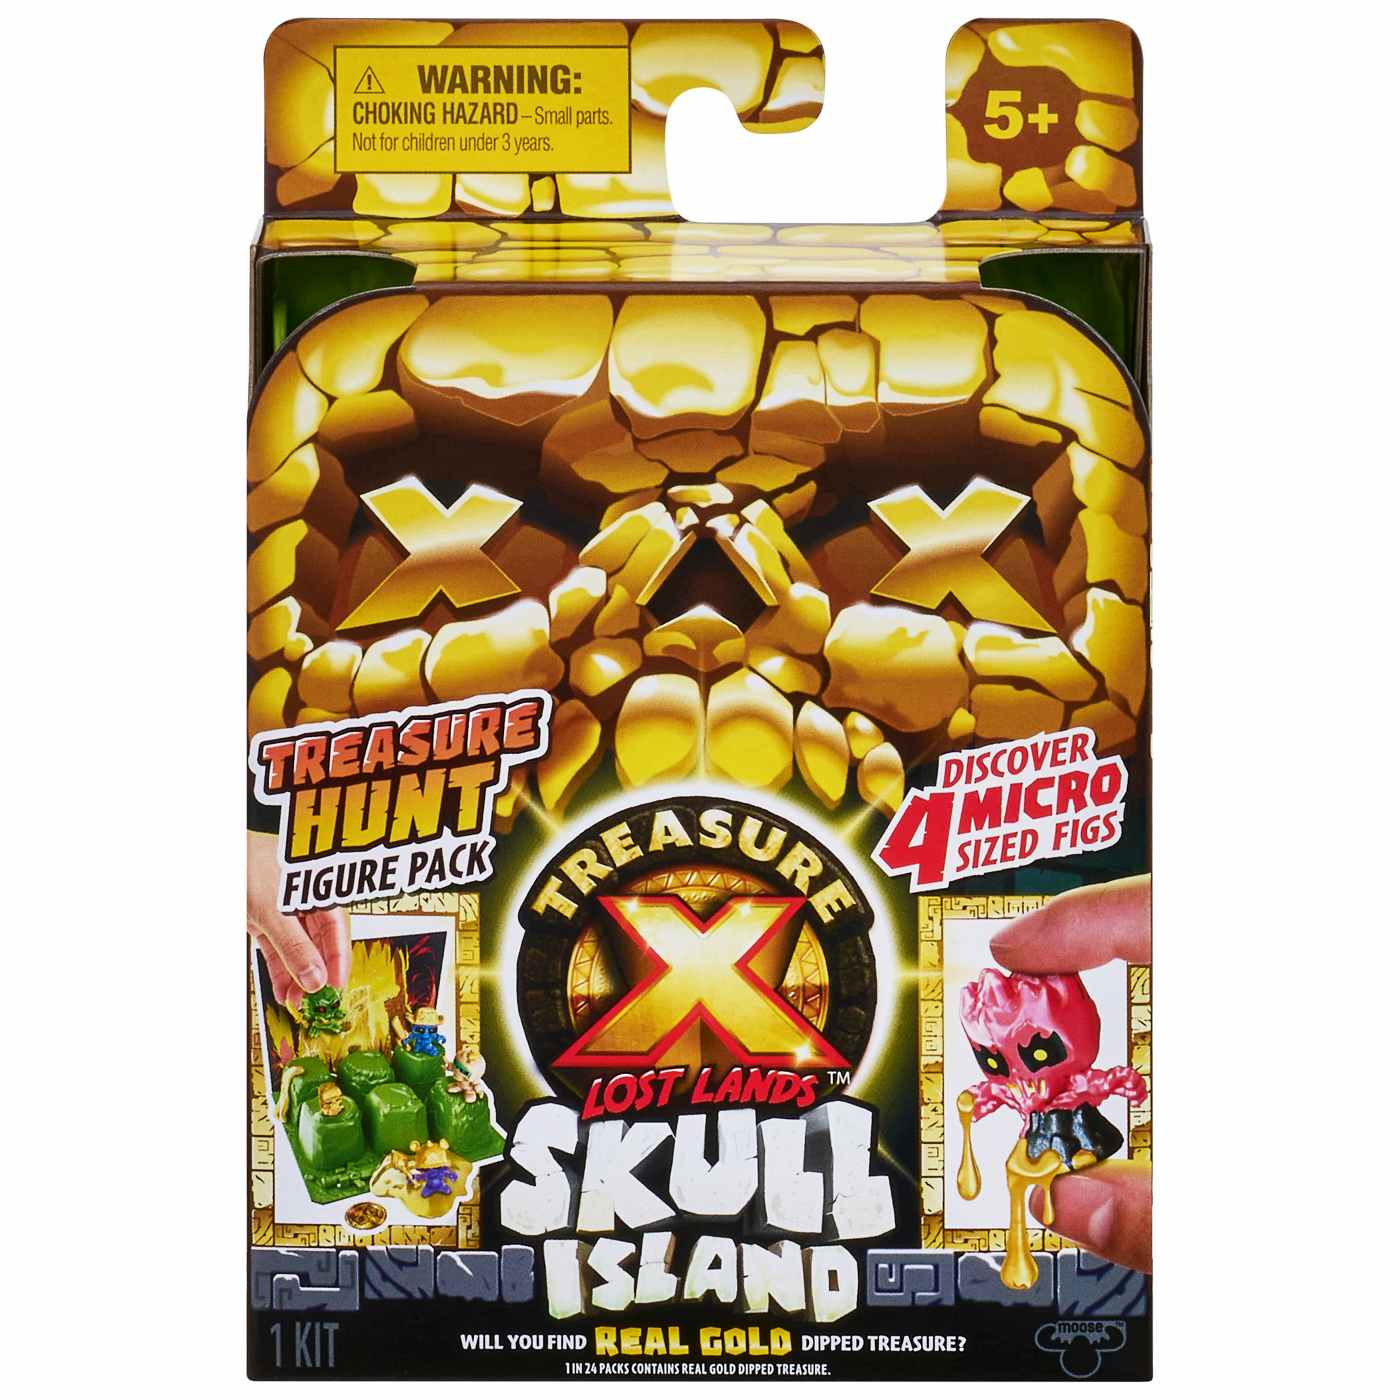 Treasure X Lost Lands Skull Island Treasure Hunt Micro Figure Pack; image 1 of 3